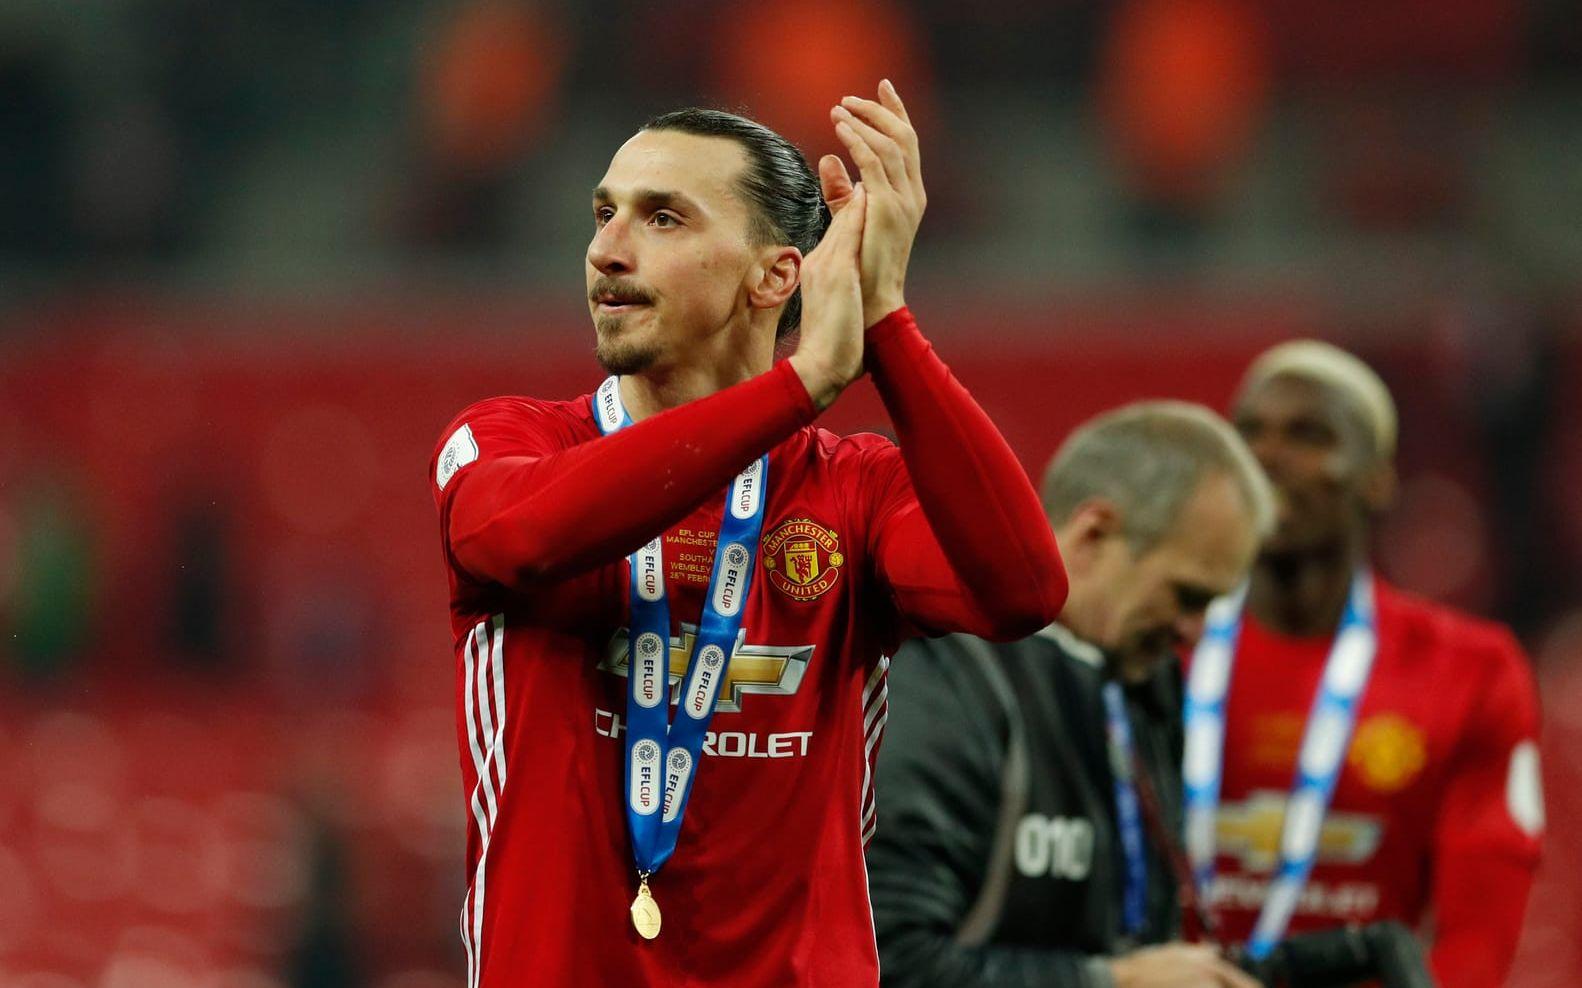 Trots skadan fick Zlatan plats i Manchester Uniteds trupp till Champions League – något som kan göra honom historisk. Bild: Bildbyrån